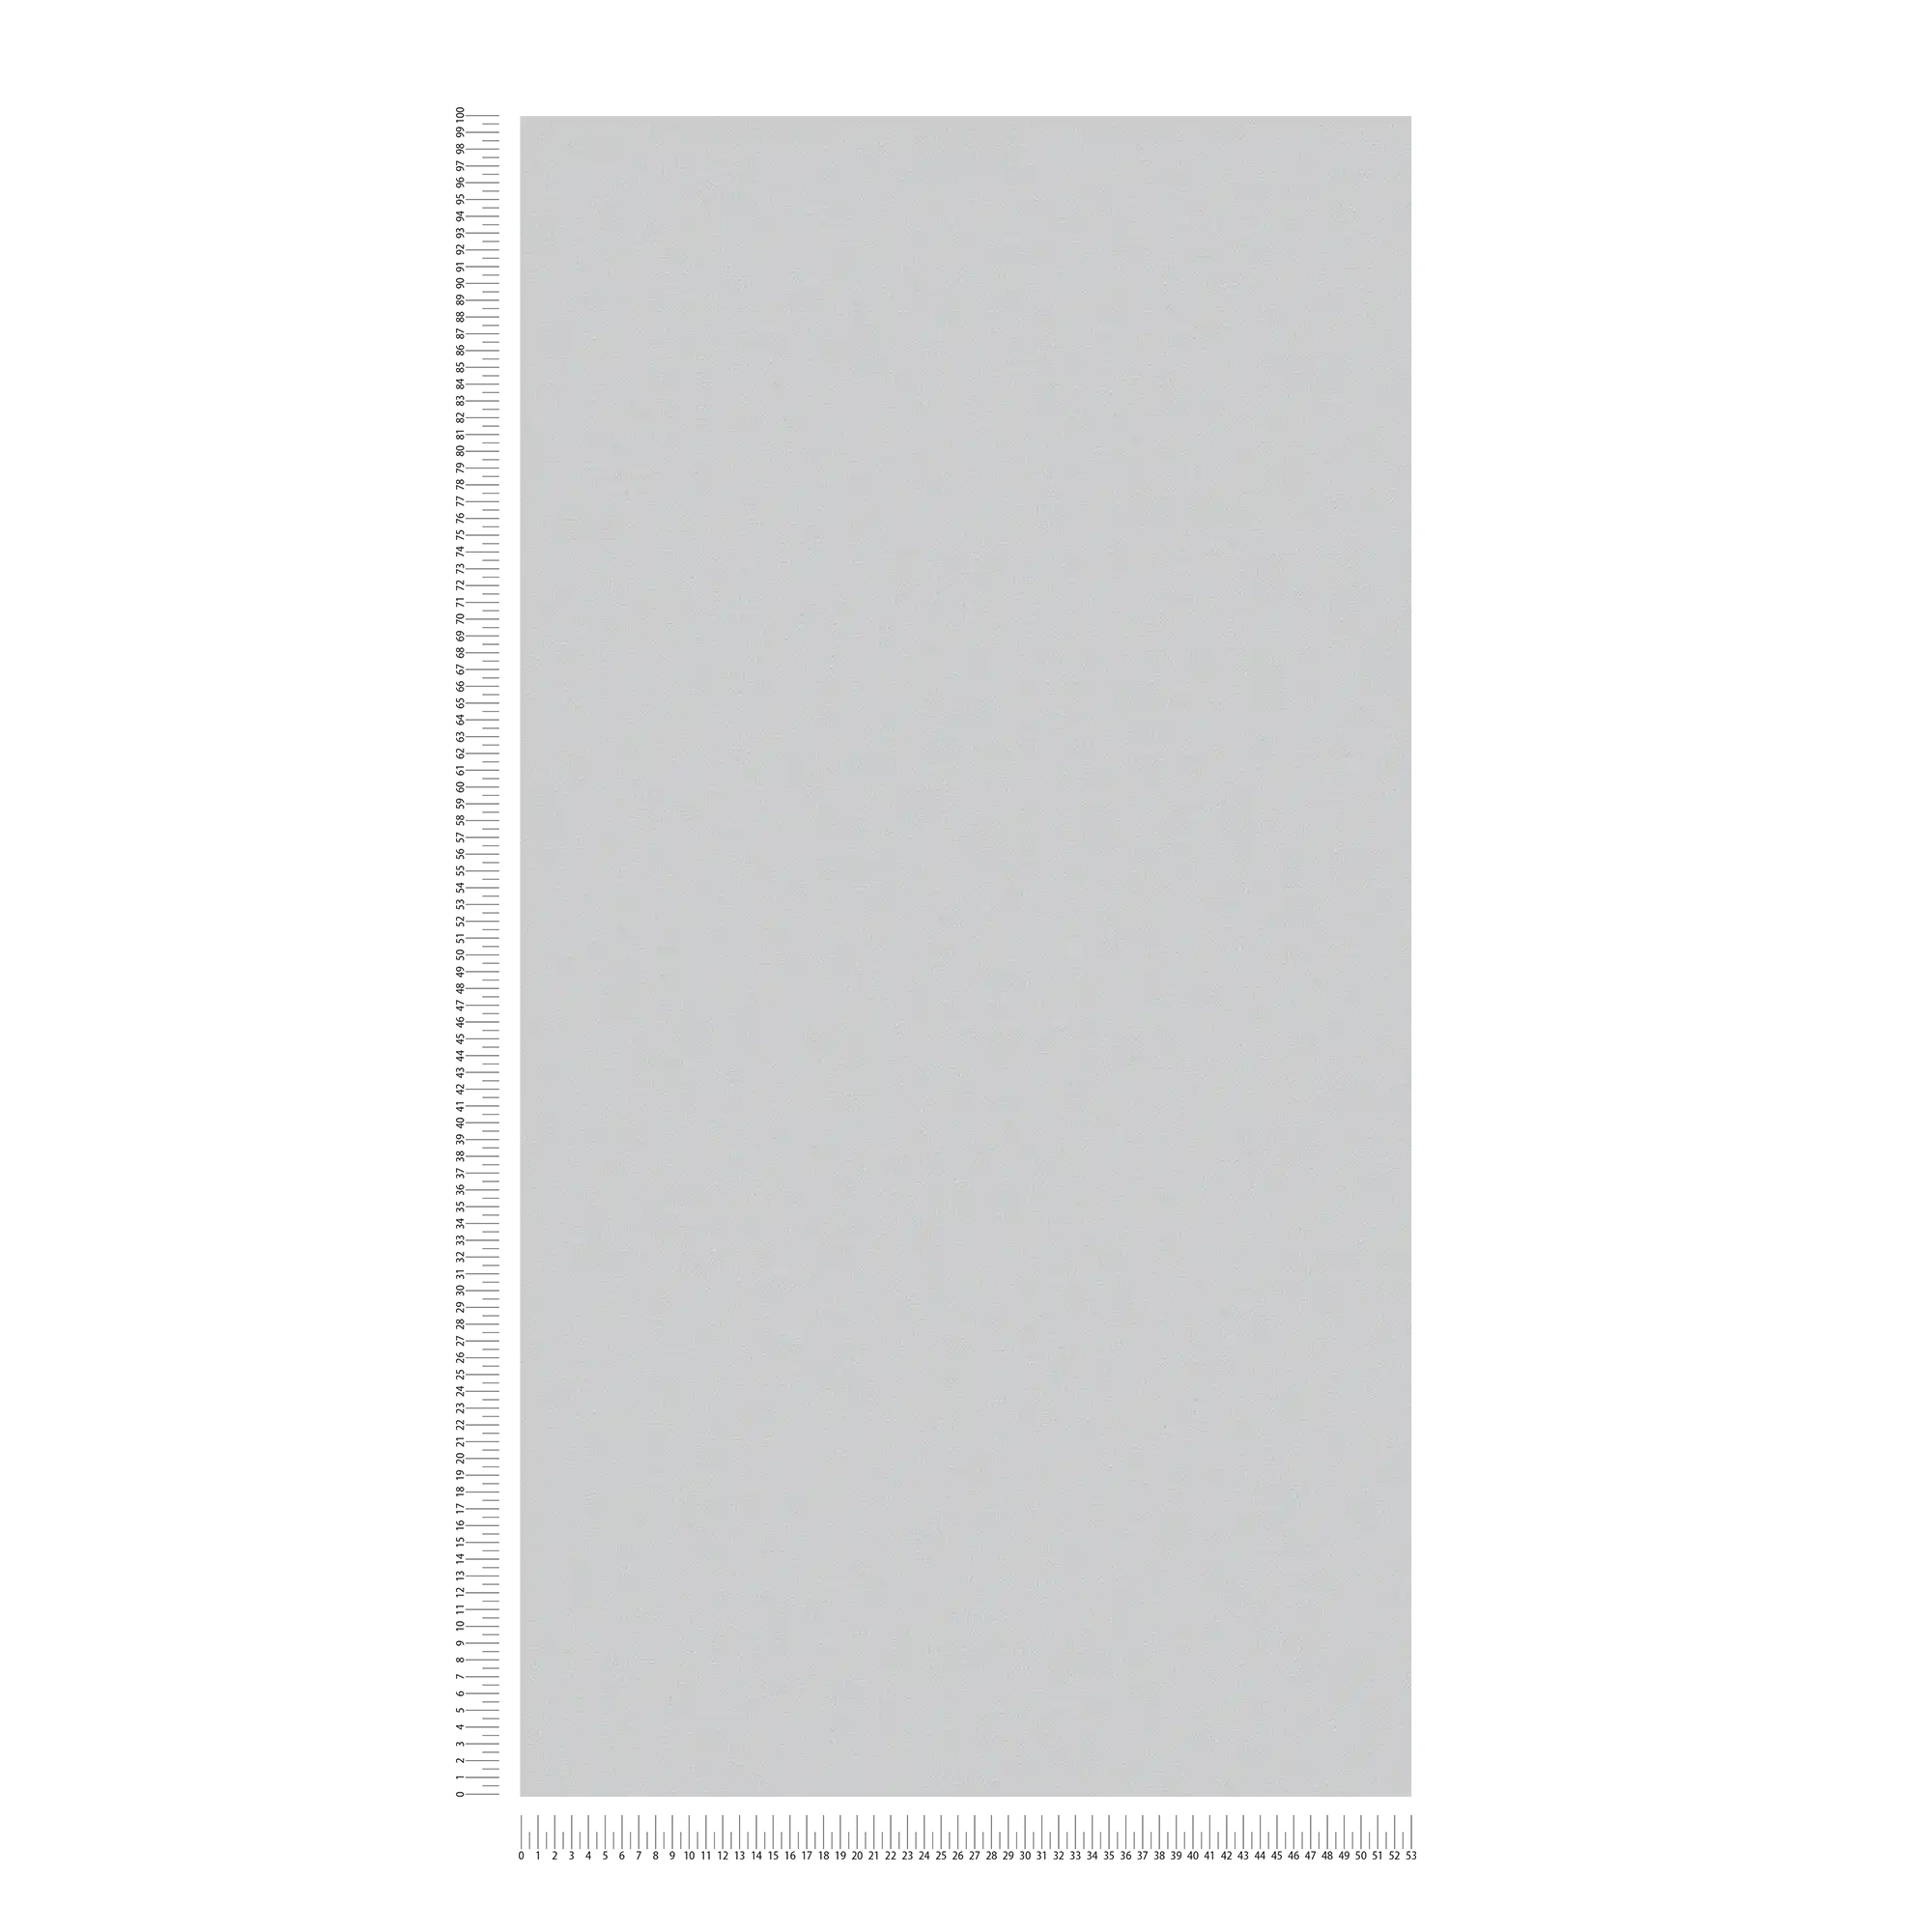             Carta da parati in tessuto non tessuto grigio di MICHASLKY, tinta unita con struttura tessile
        